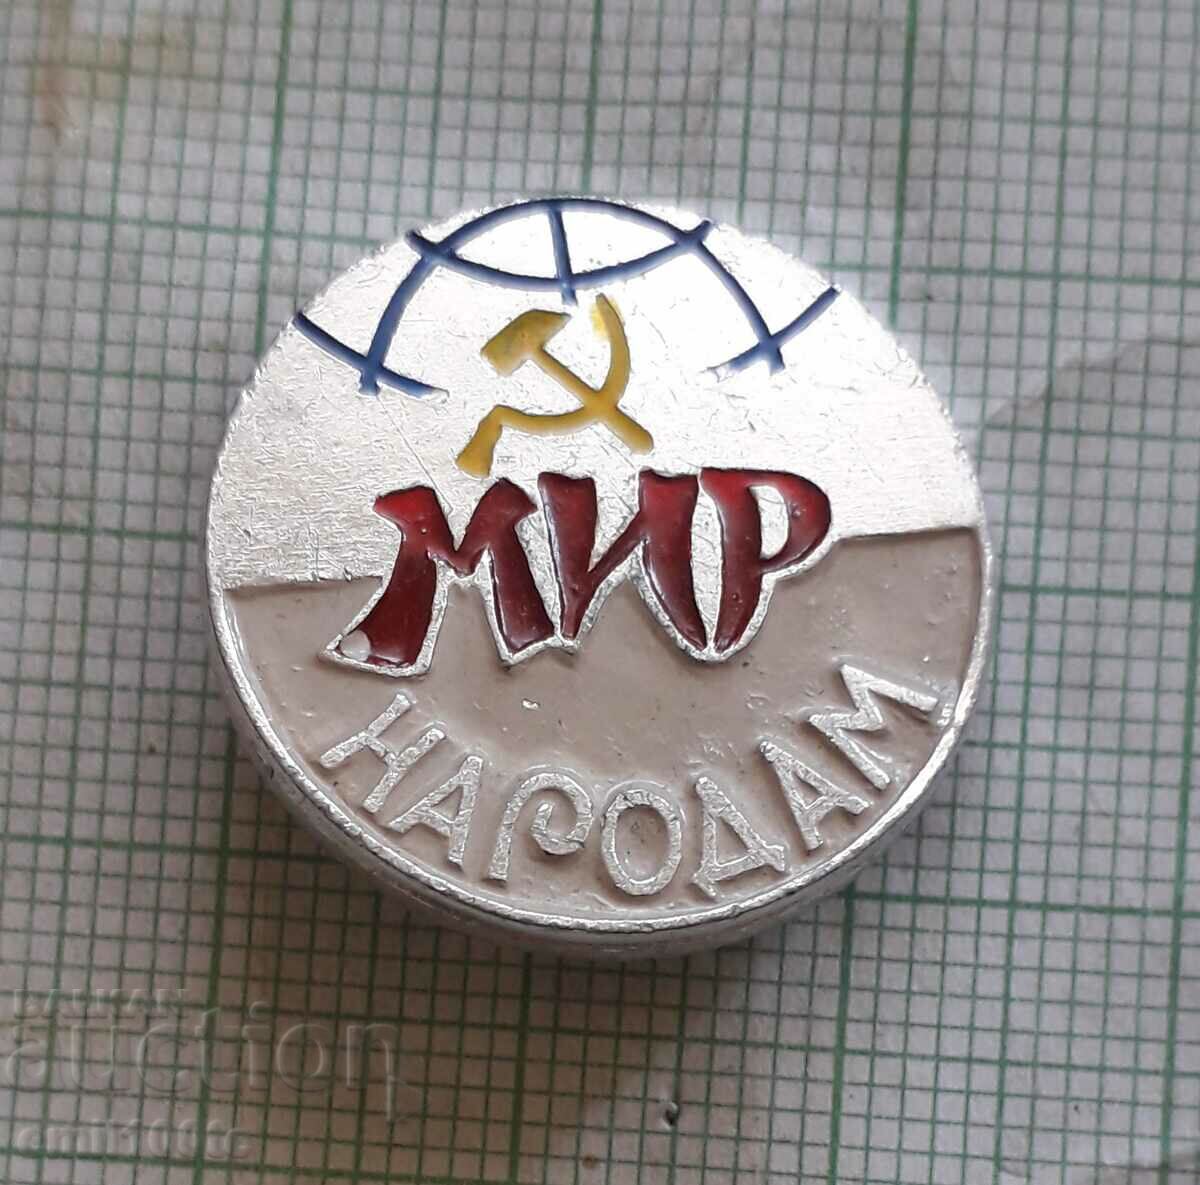 Σήμα - Ειρήνη στην ΕΣΣΔ